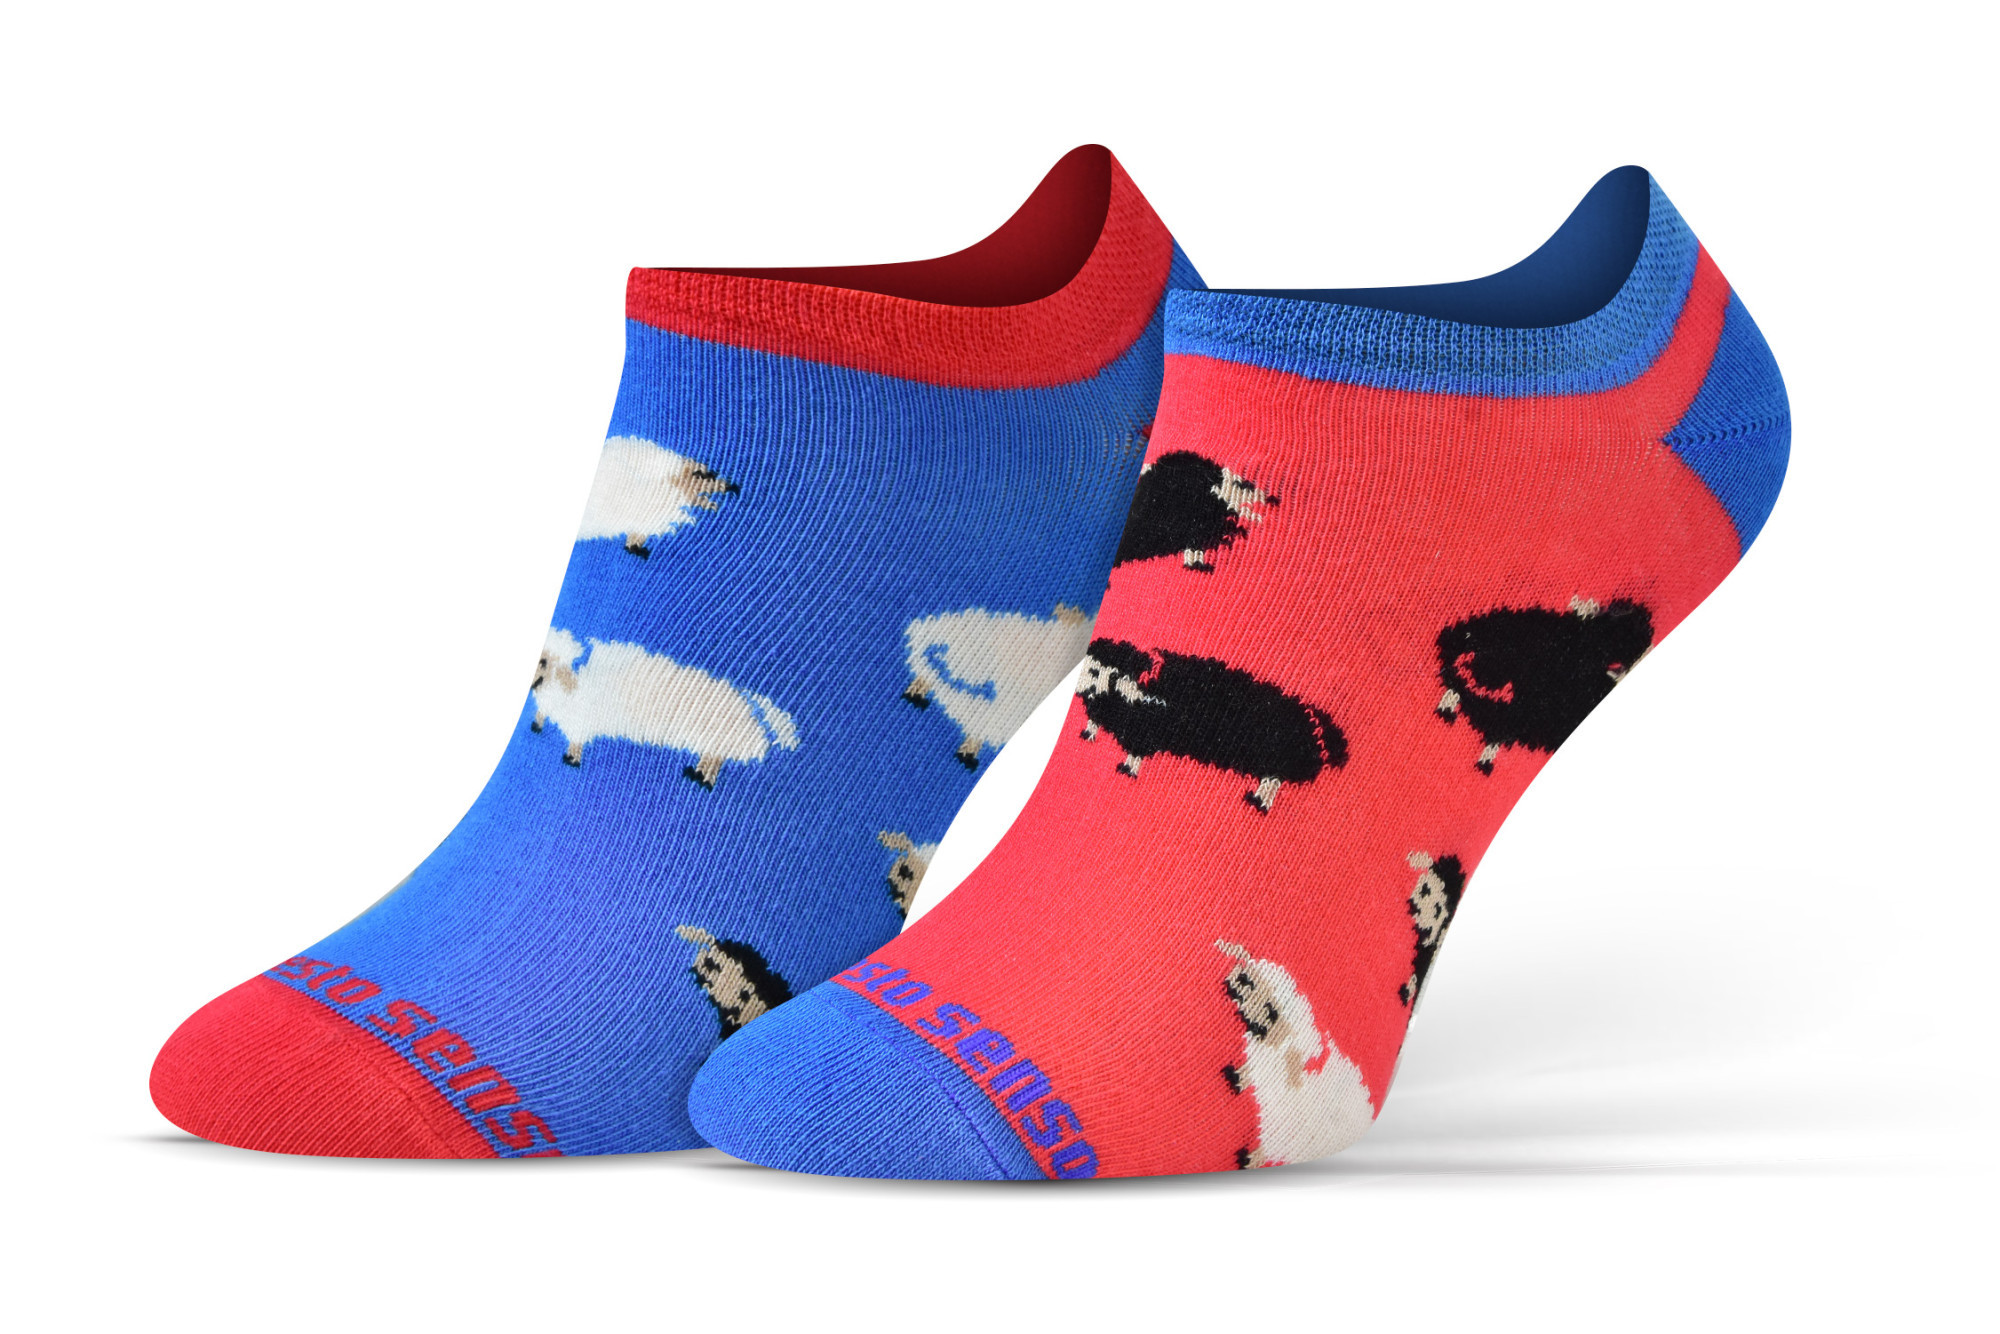 Sesto Senso Finest bavlněné ponožky s nízkým střihem Sheep/Rams 35-38